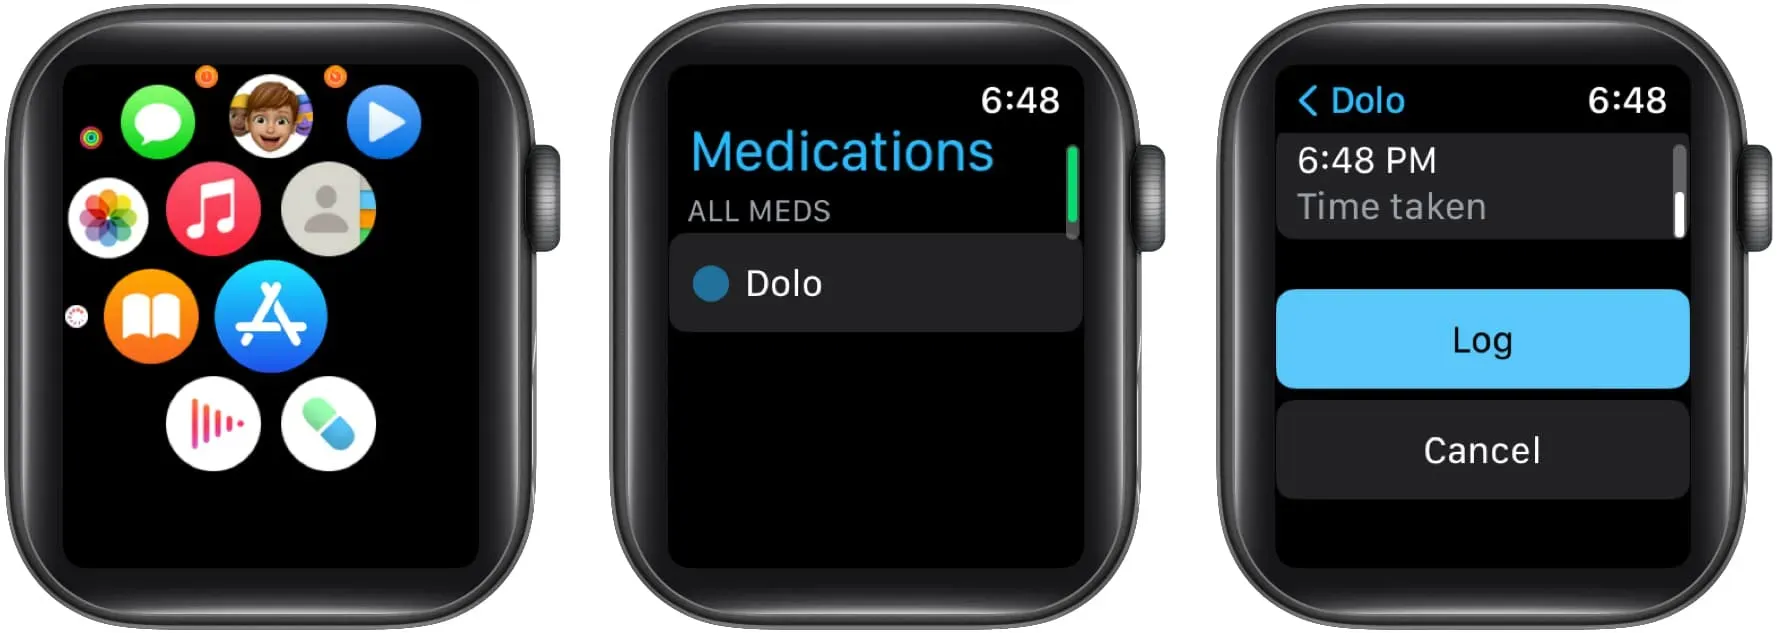 Logga in mediciner i Apple Watch